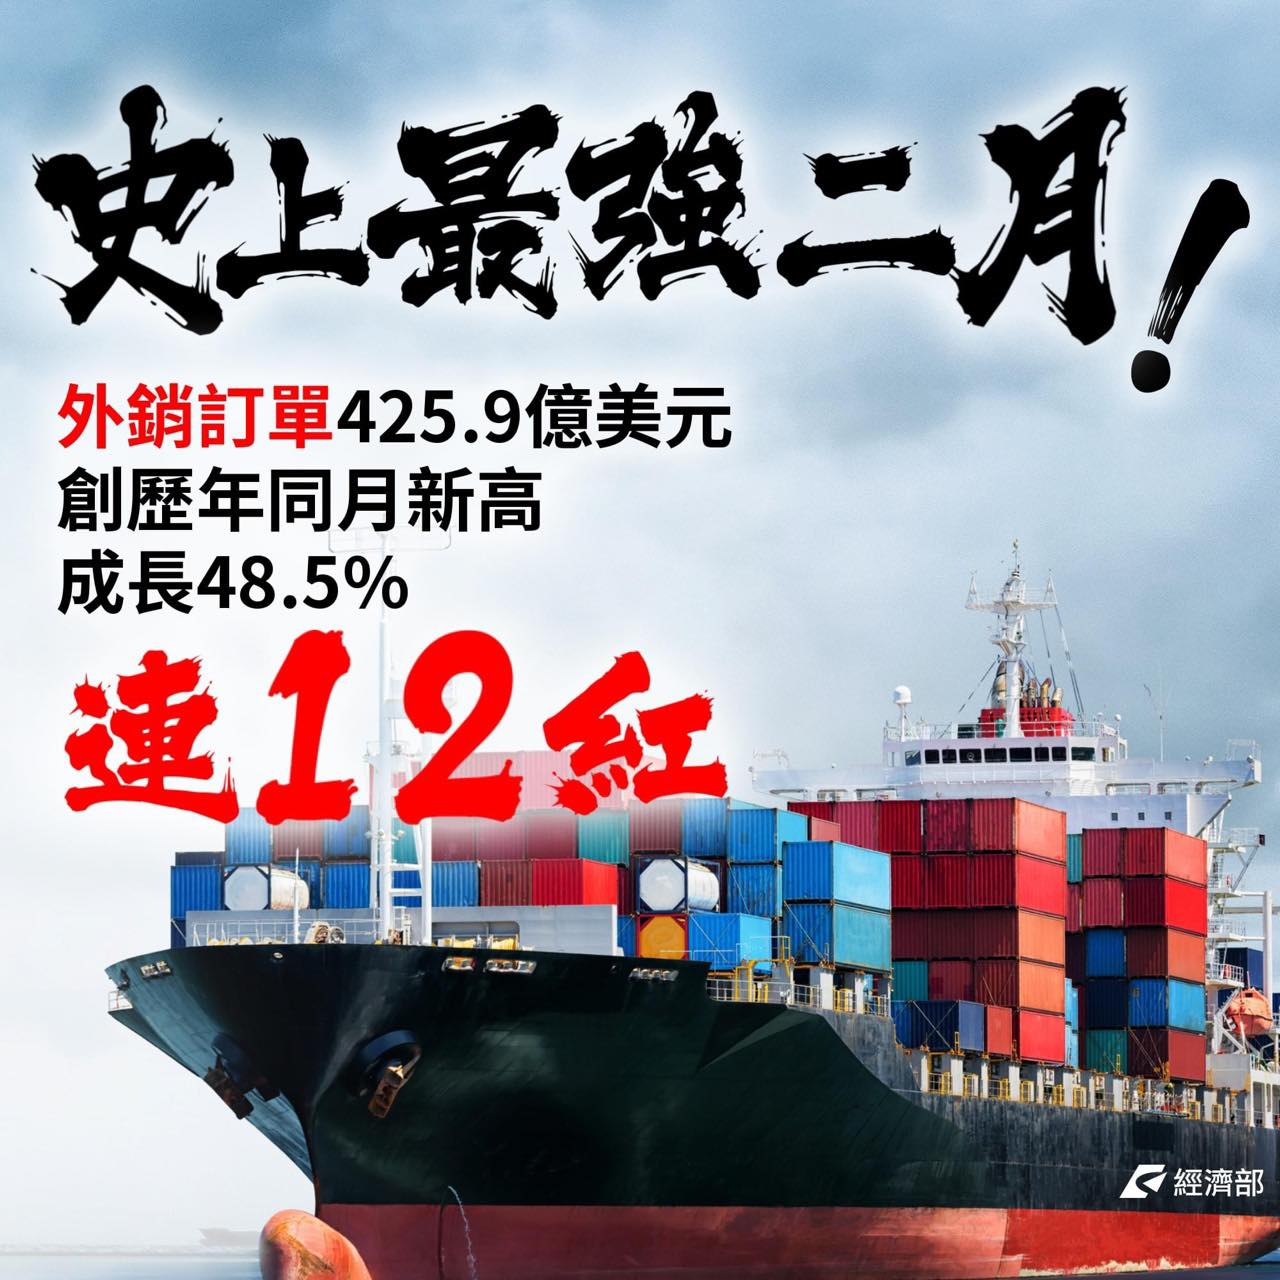 台灣外銷訂單連「12紅」  王定宇:台灣廠商能力受全球肯定